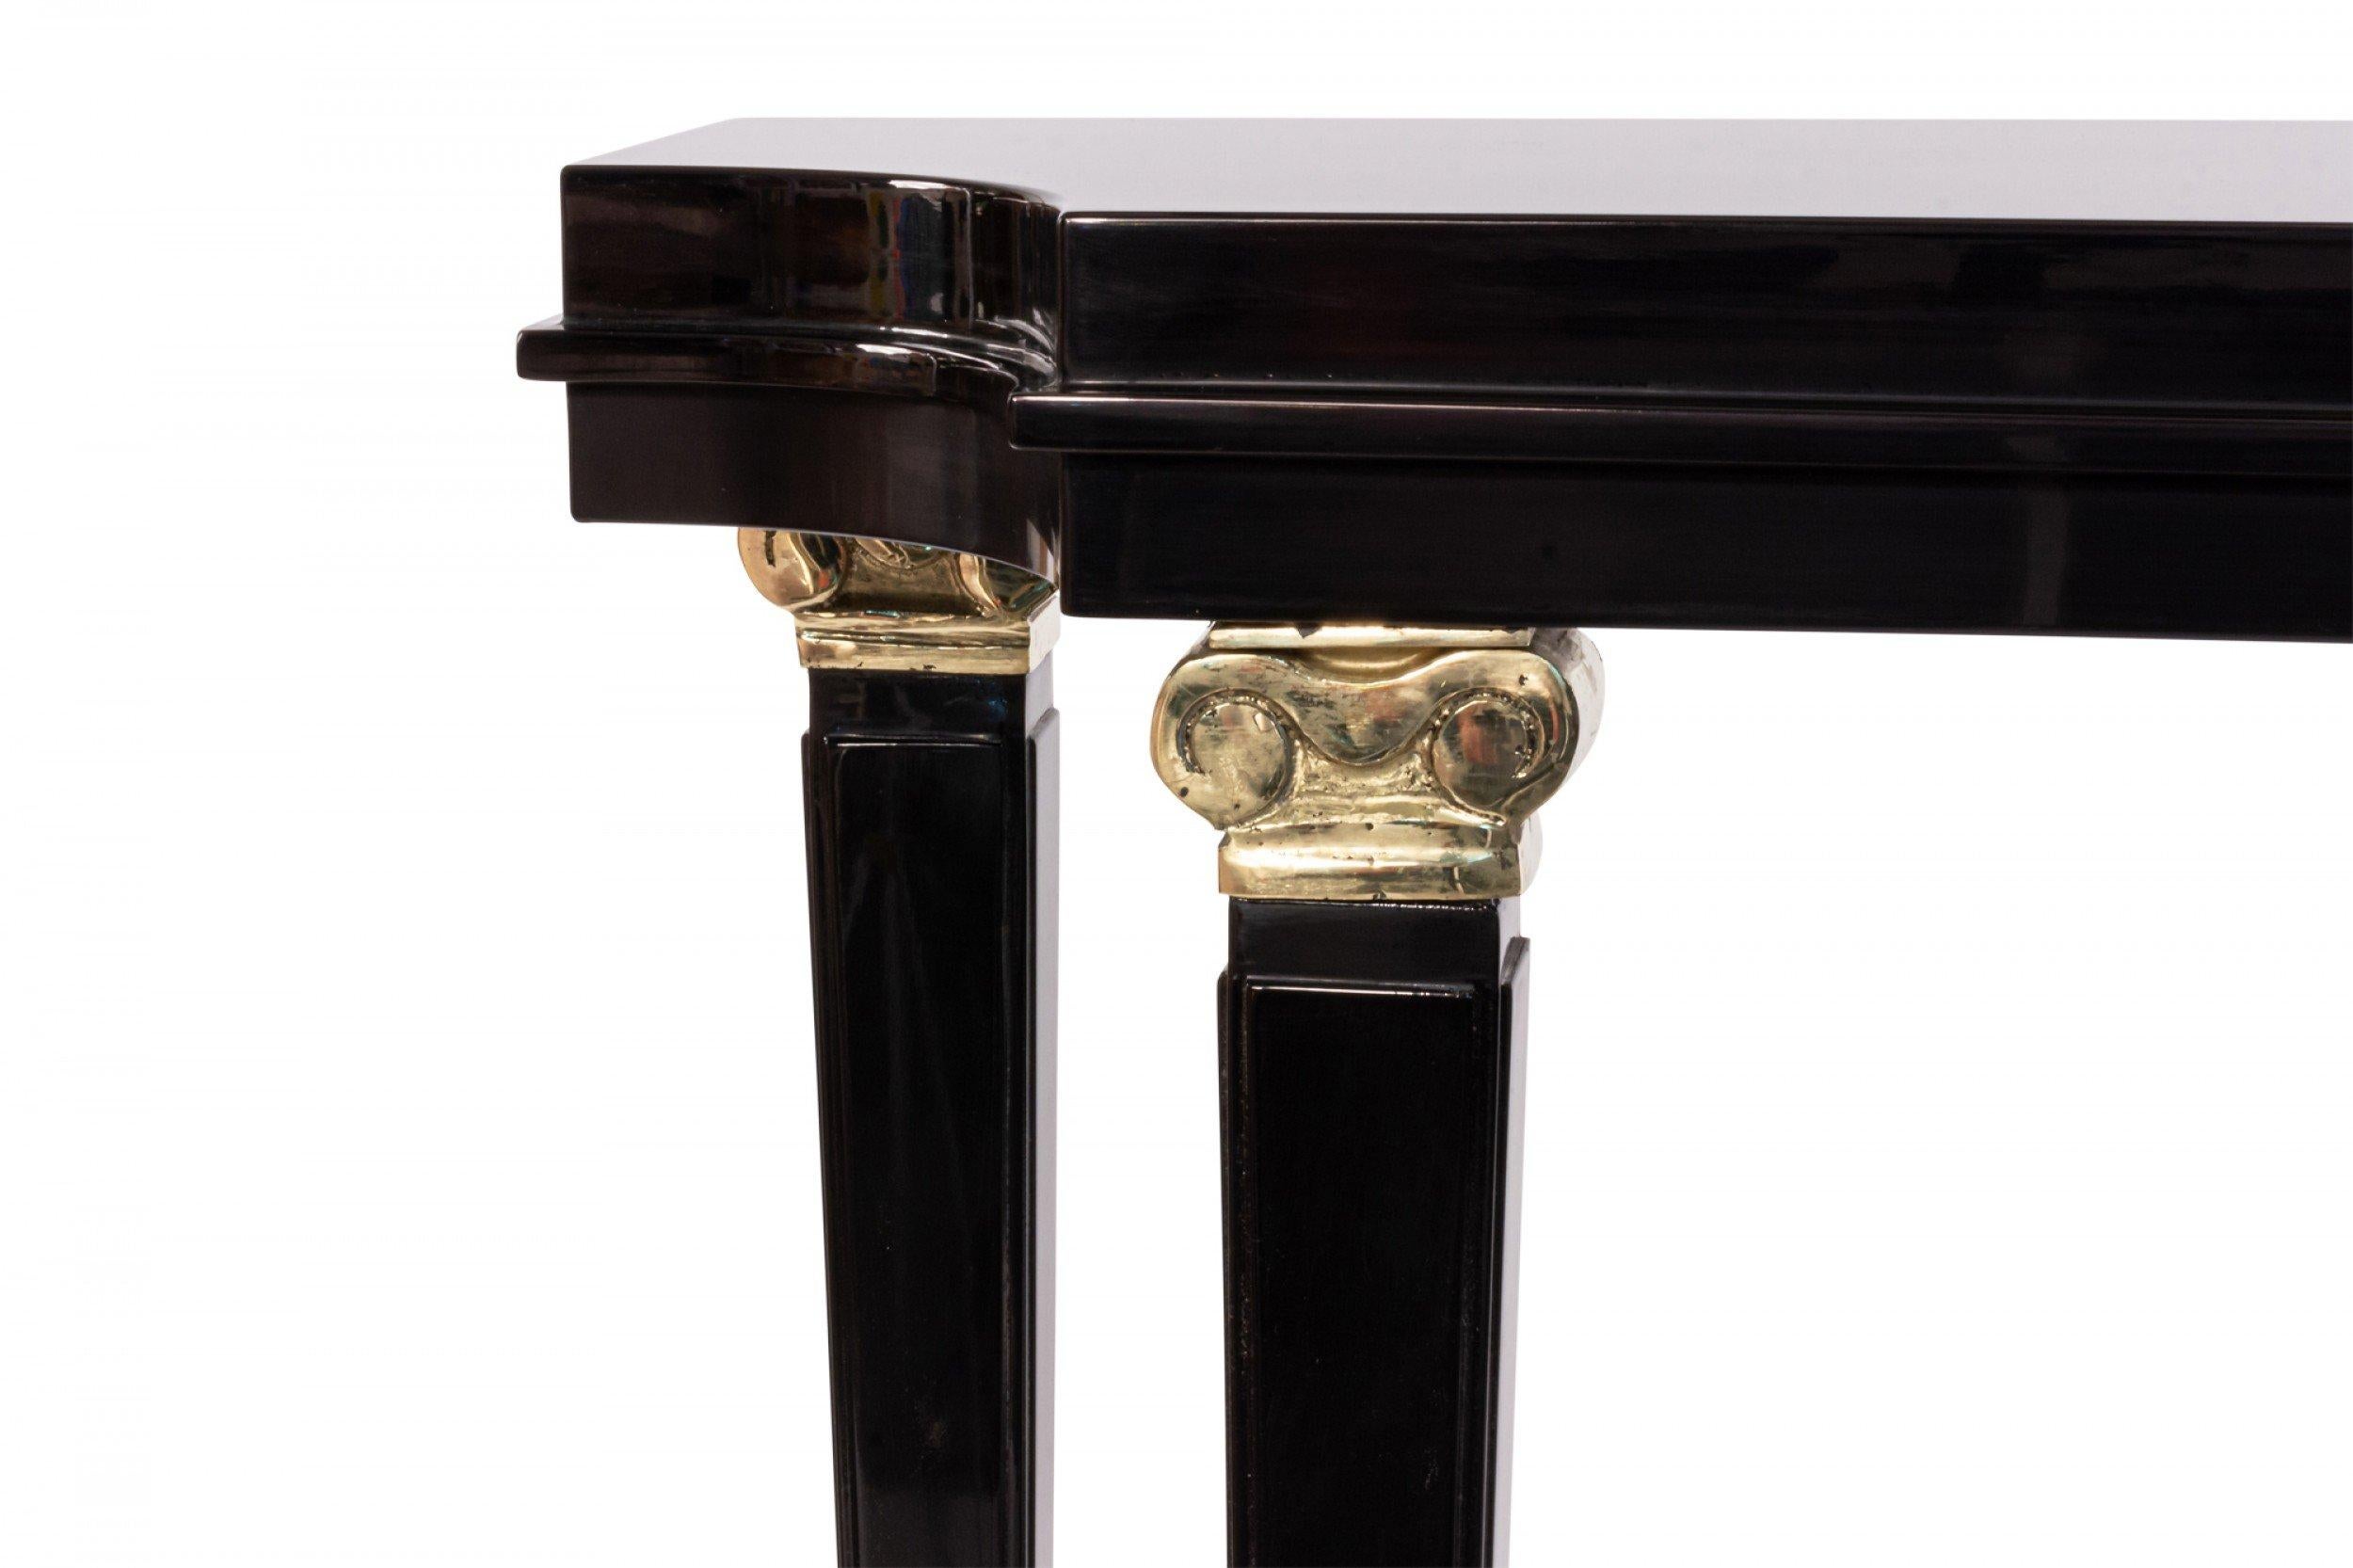 Table console contemporaine française de style mid-century des années 1940 avec plateau en laque noire, étagère et garniture en bronze sur les pieds (fait sur commande, taille et couleur personnalisées disponibles).
     